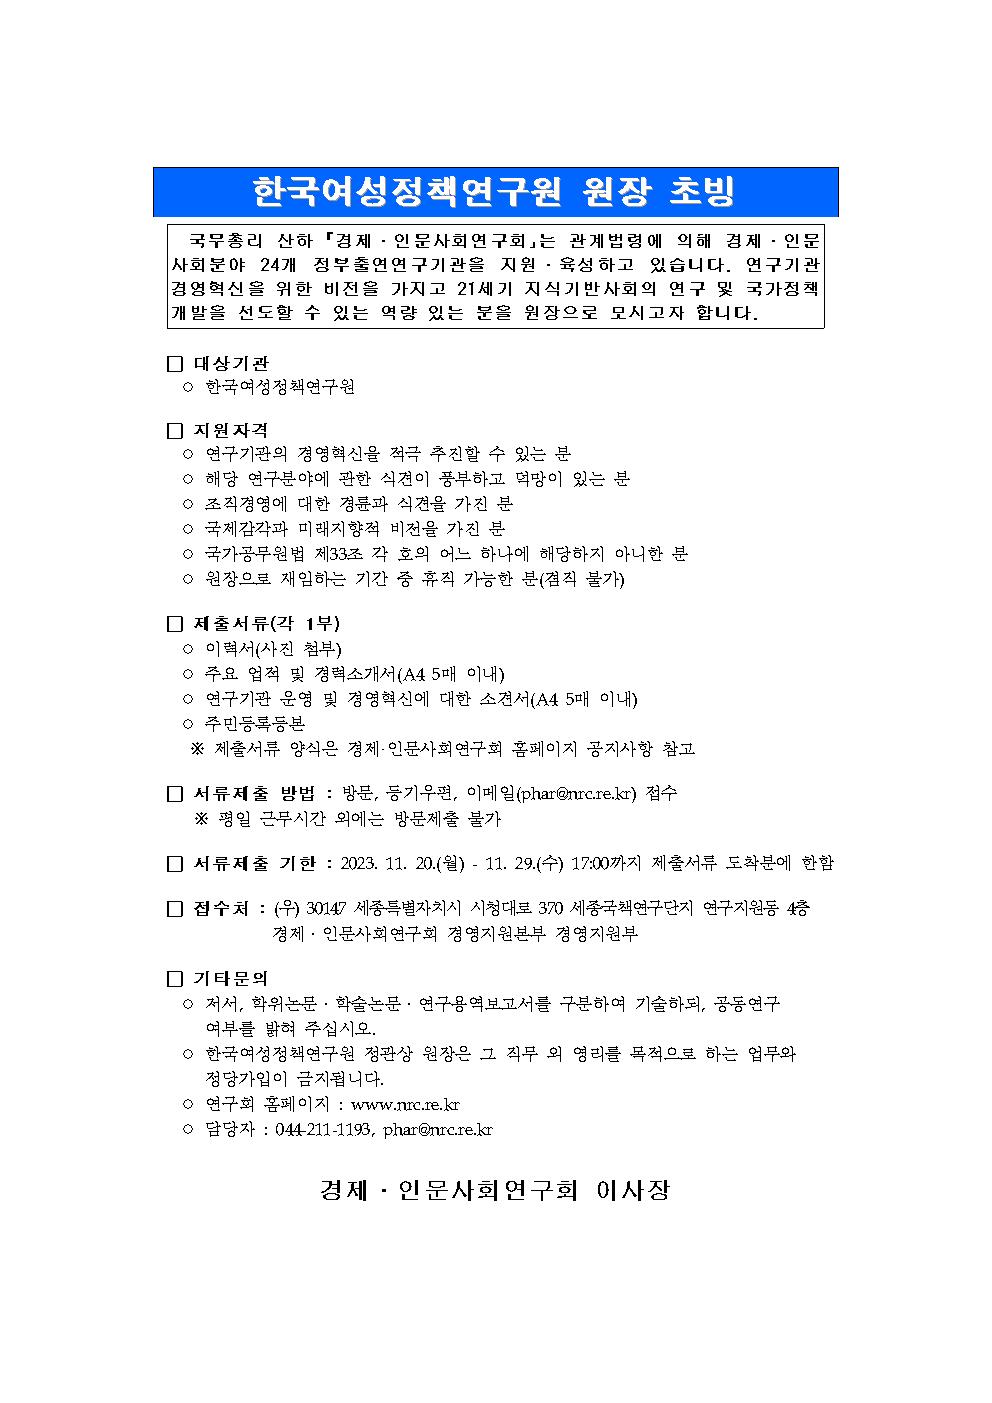 [공고] 한국여성정책연구원 원장 초빙 공고 상세 하단 참조